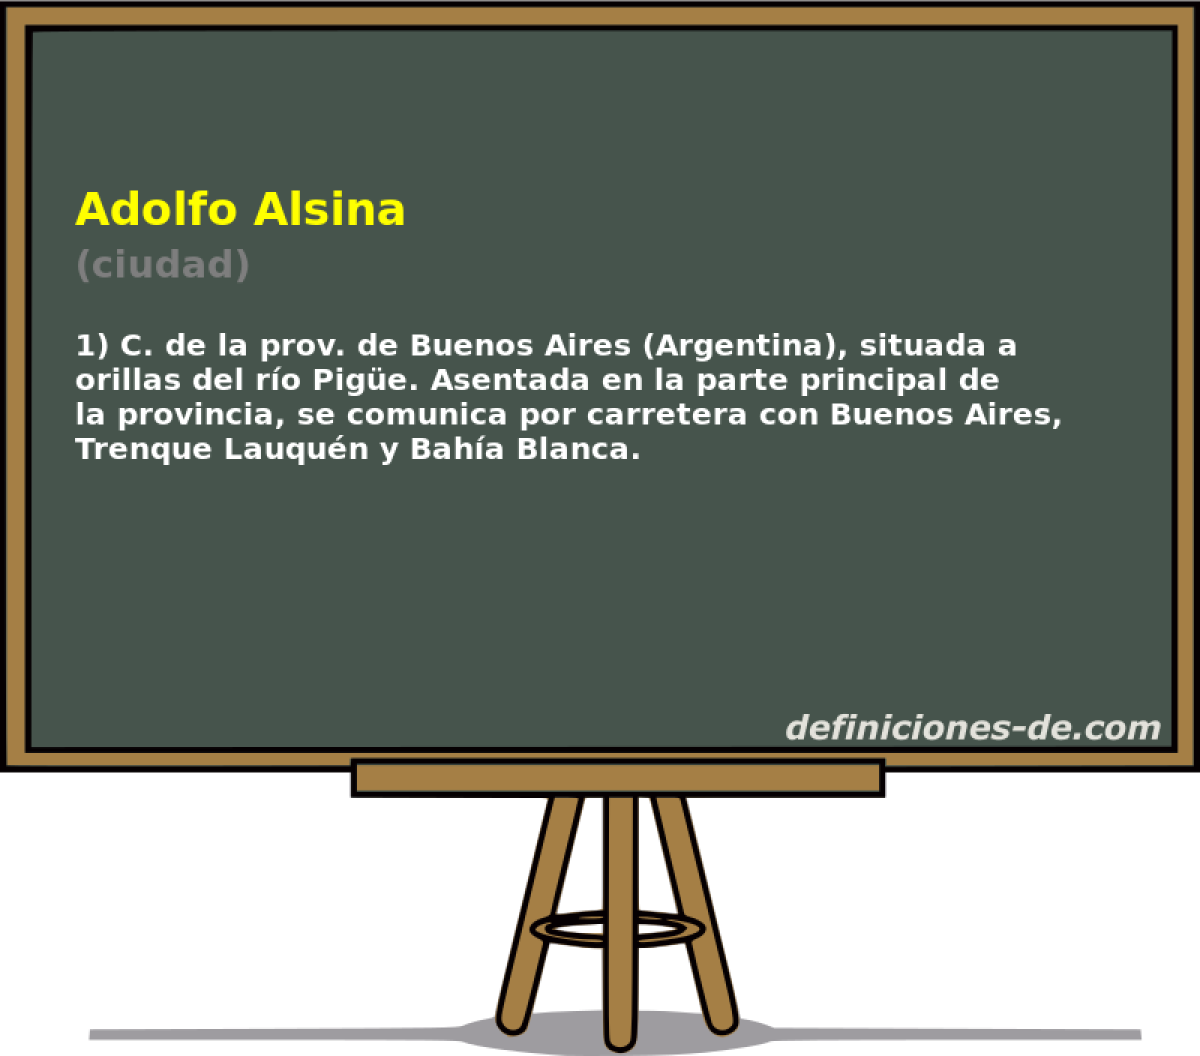 Adolfo Alsina (ciudad)